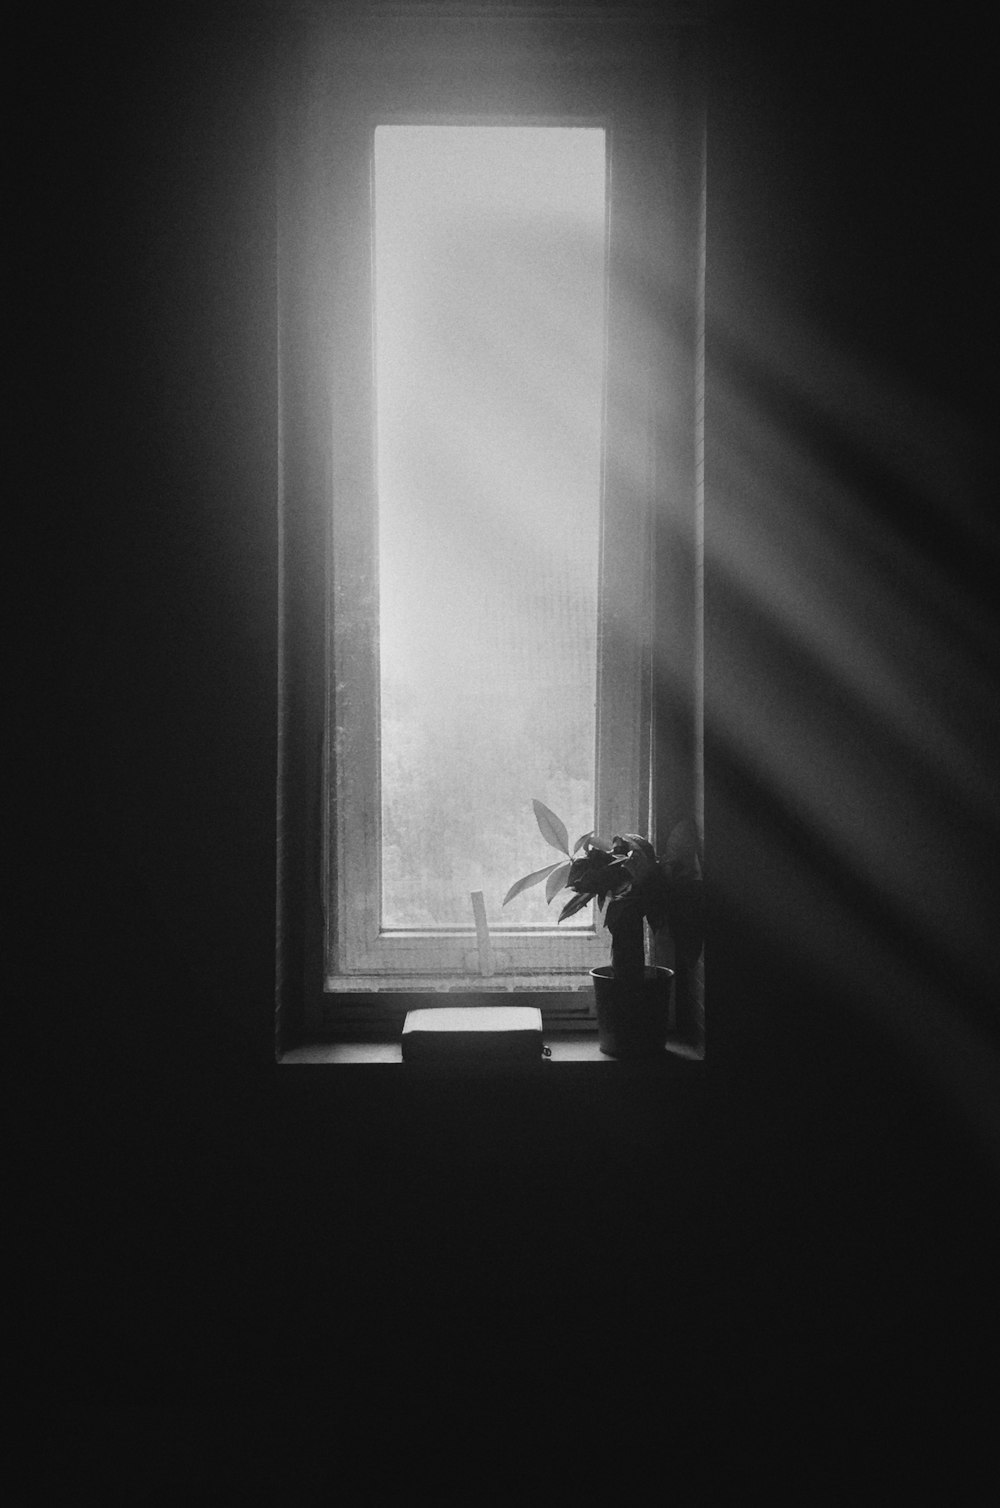 fotografia in scala di grigi della pianta sulla finestra